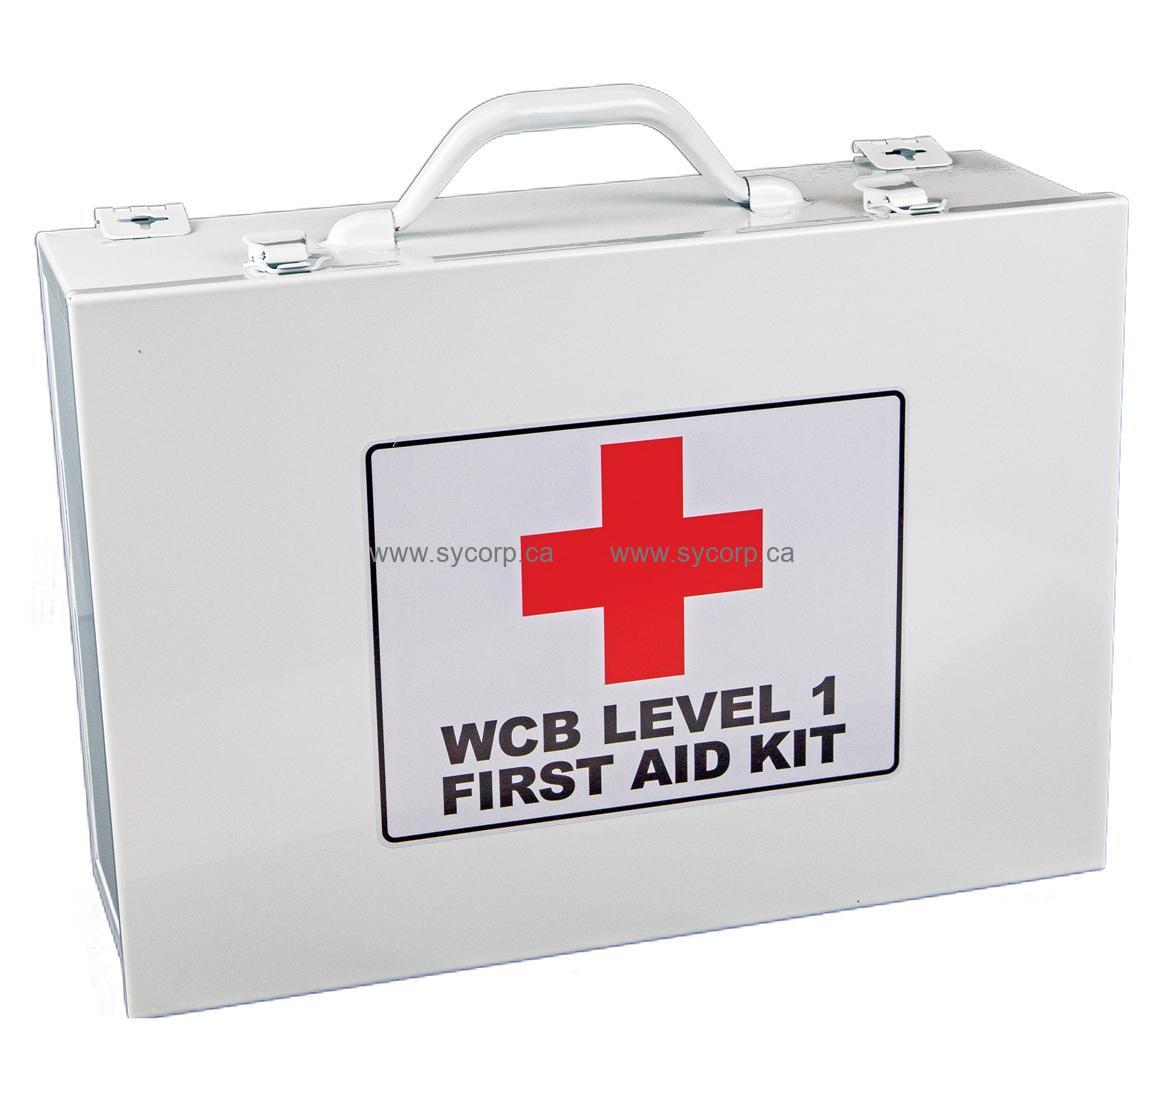 First Aid Kit, BC Level 1, WCB, 7FX Metal Box, FSWCBL17FX